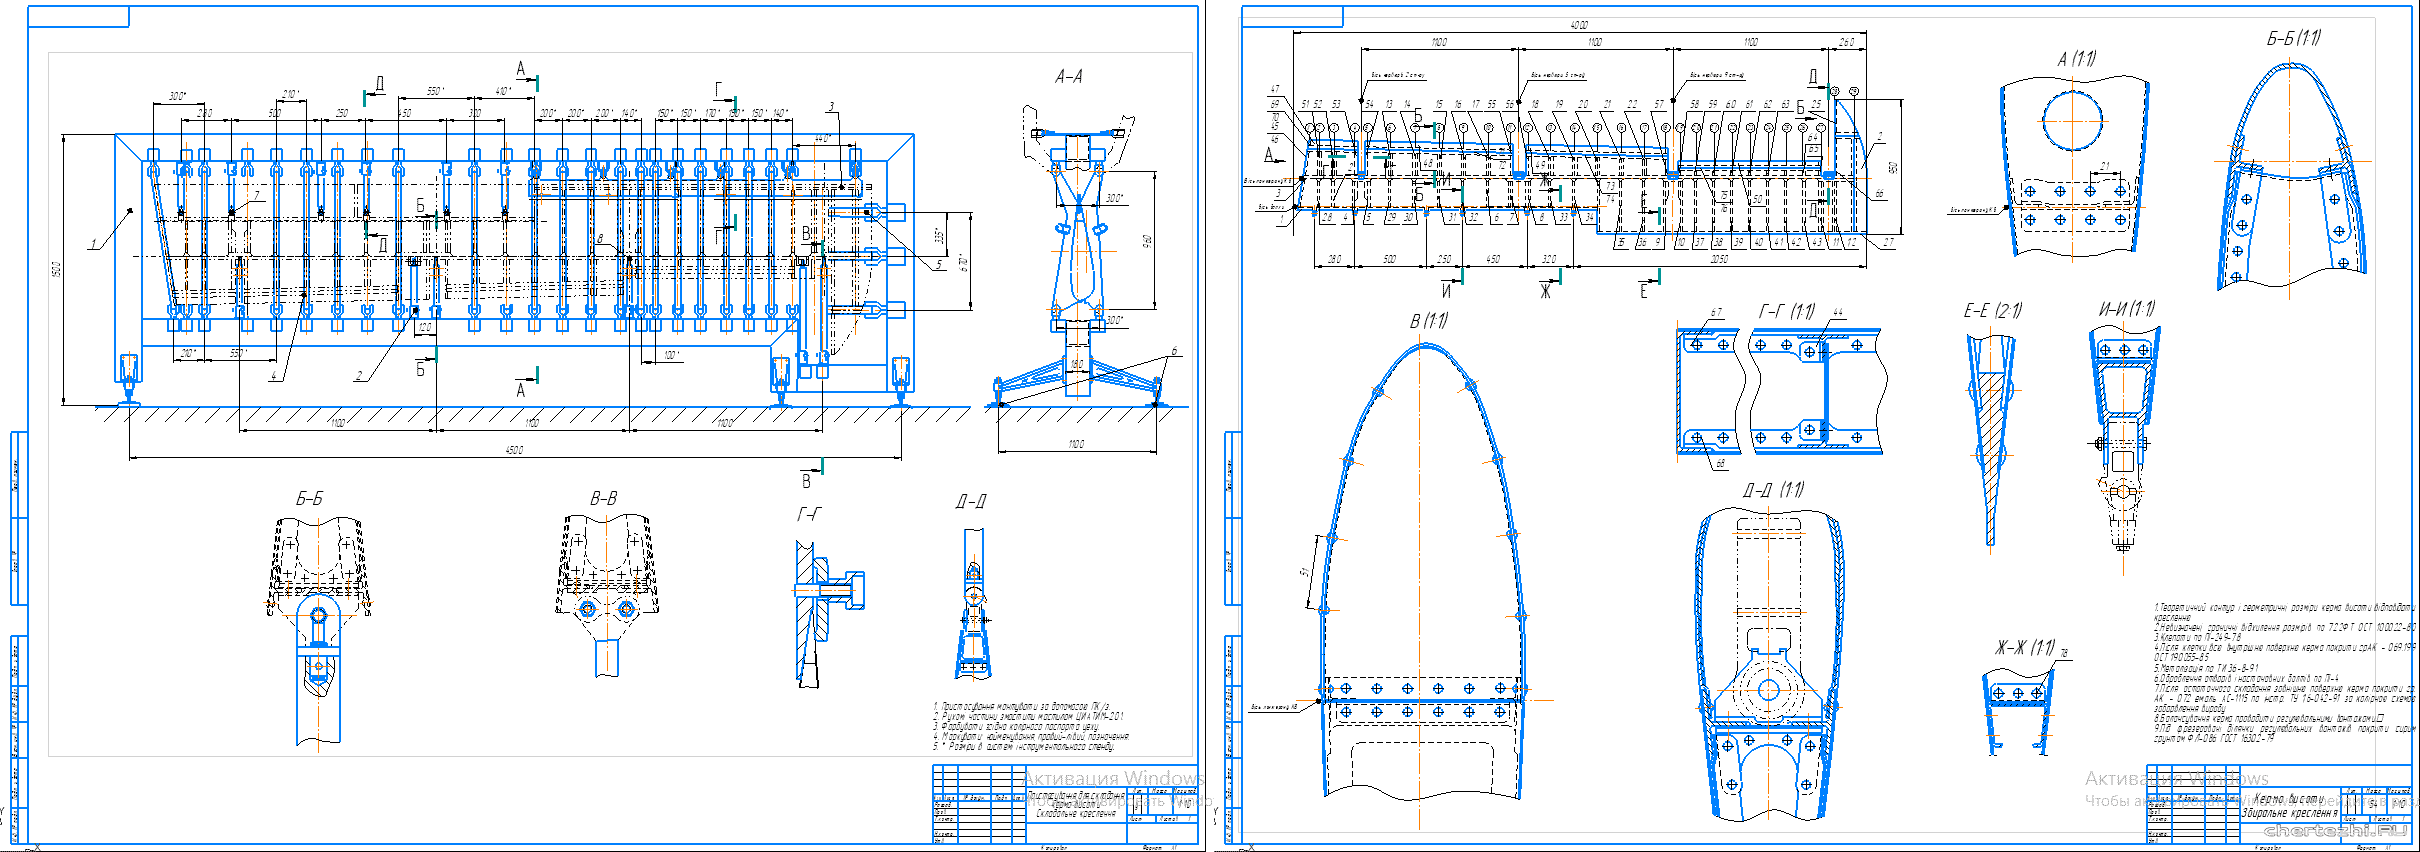 Курсовий проект - Складання керма висоти пасажирського літака АН-140